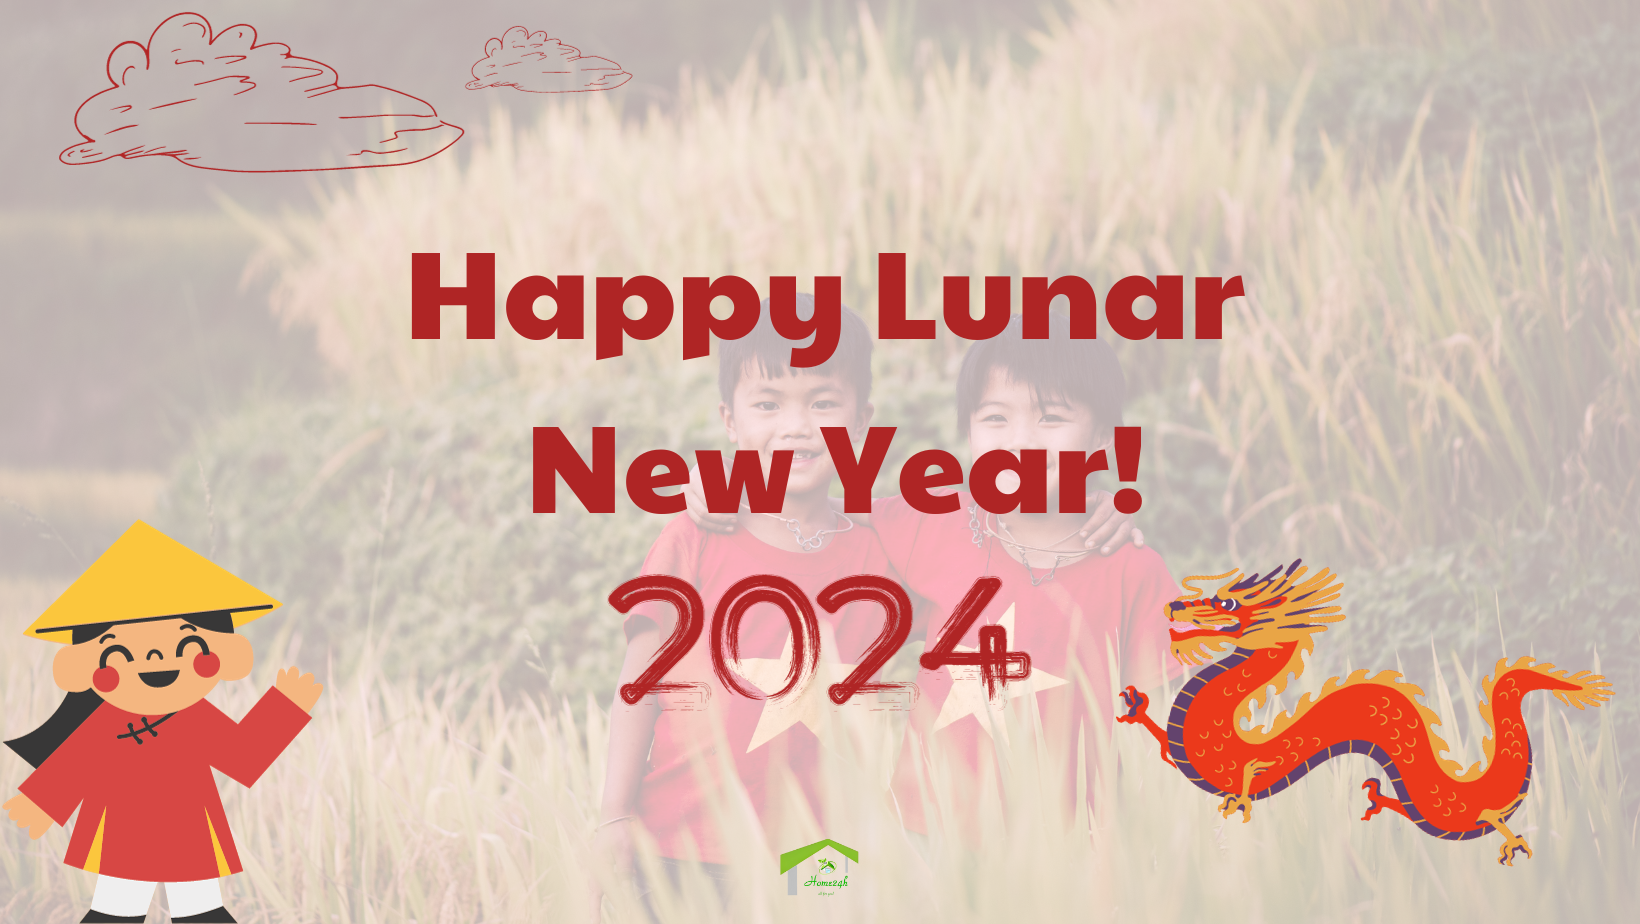 Happy Lunar New Year! 2024